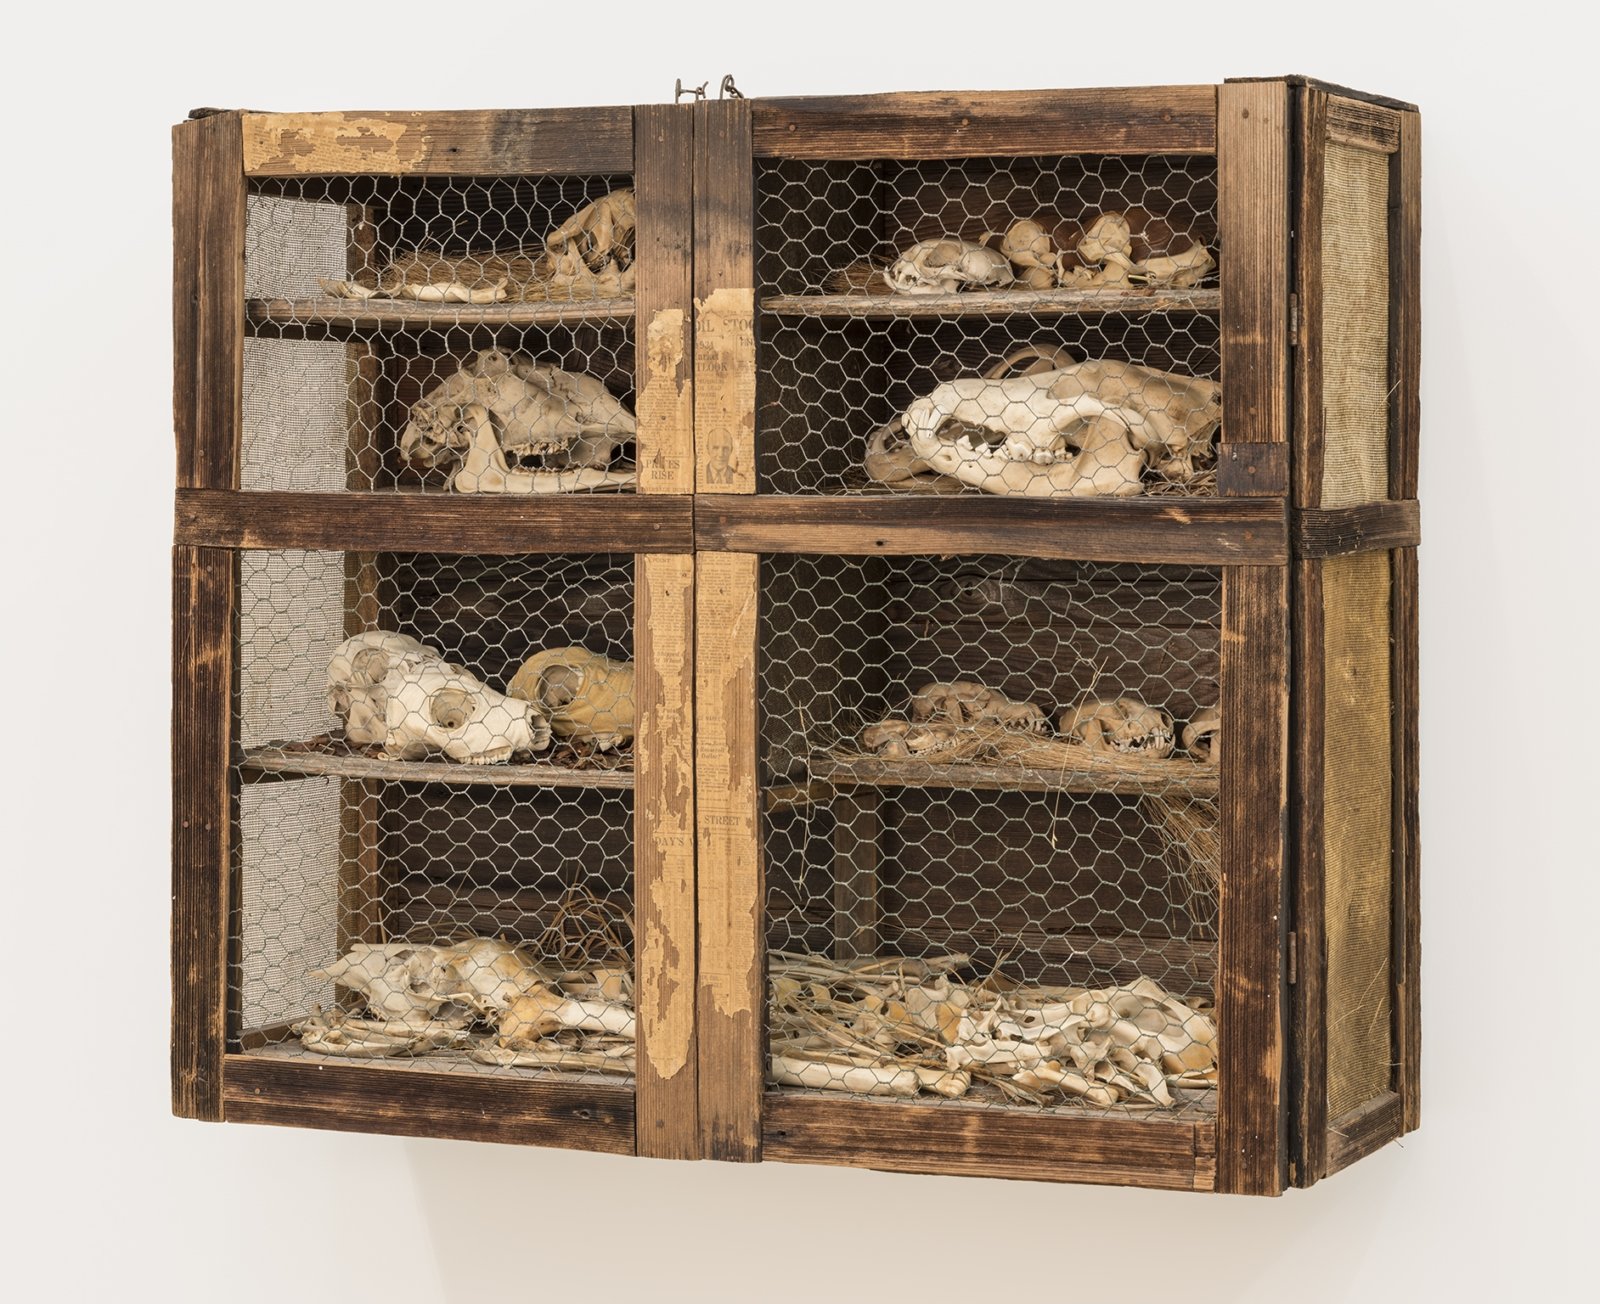 Liz Magor, The Hutch, 1976, natural materials, wood, bones, 33 x 38 x 15 in. (84 x 97 x 38 cm)